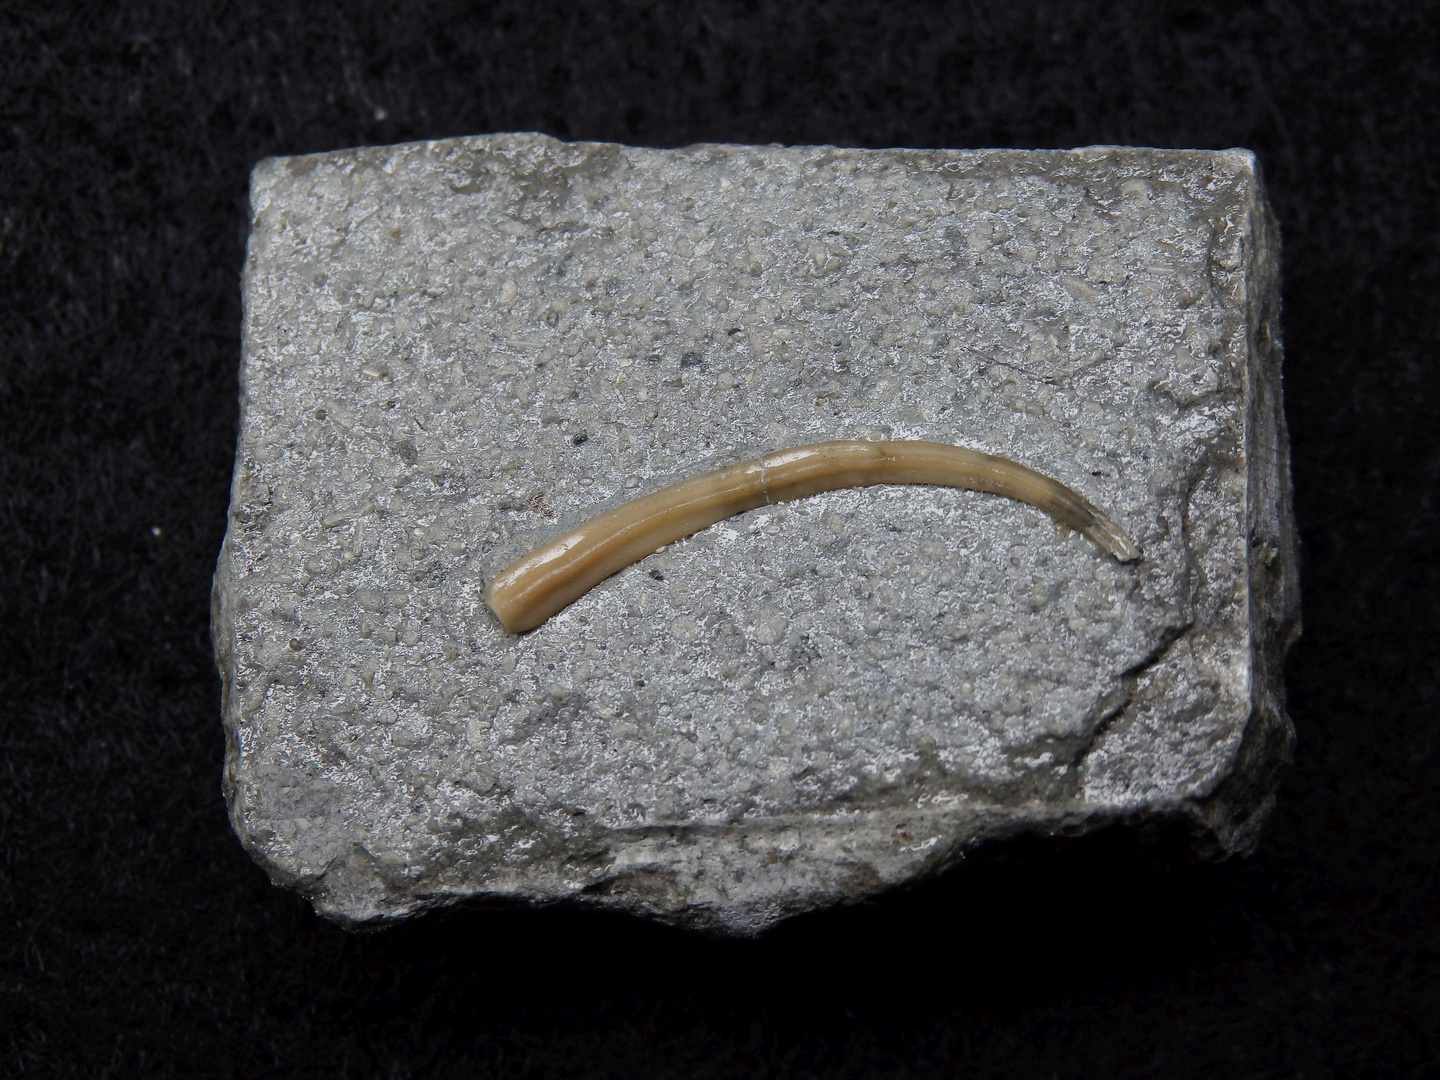 Fossiler Kalkröhrenwurm ("Serpel") - Serpula sp.